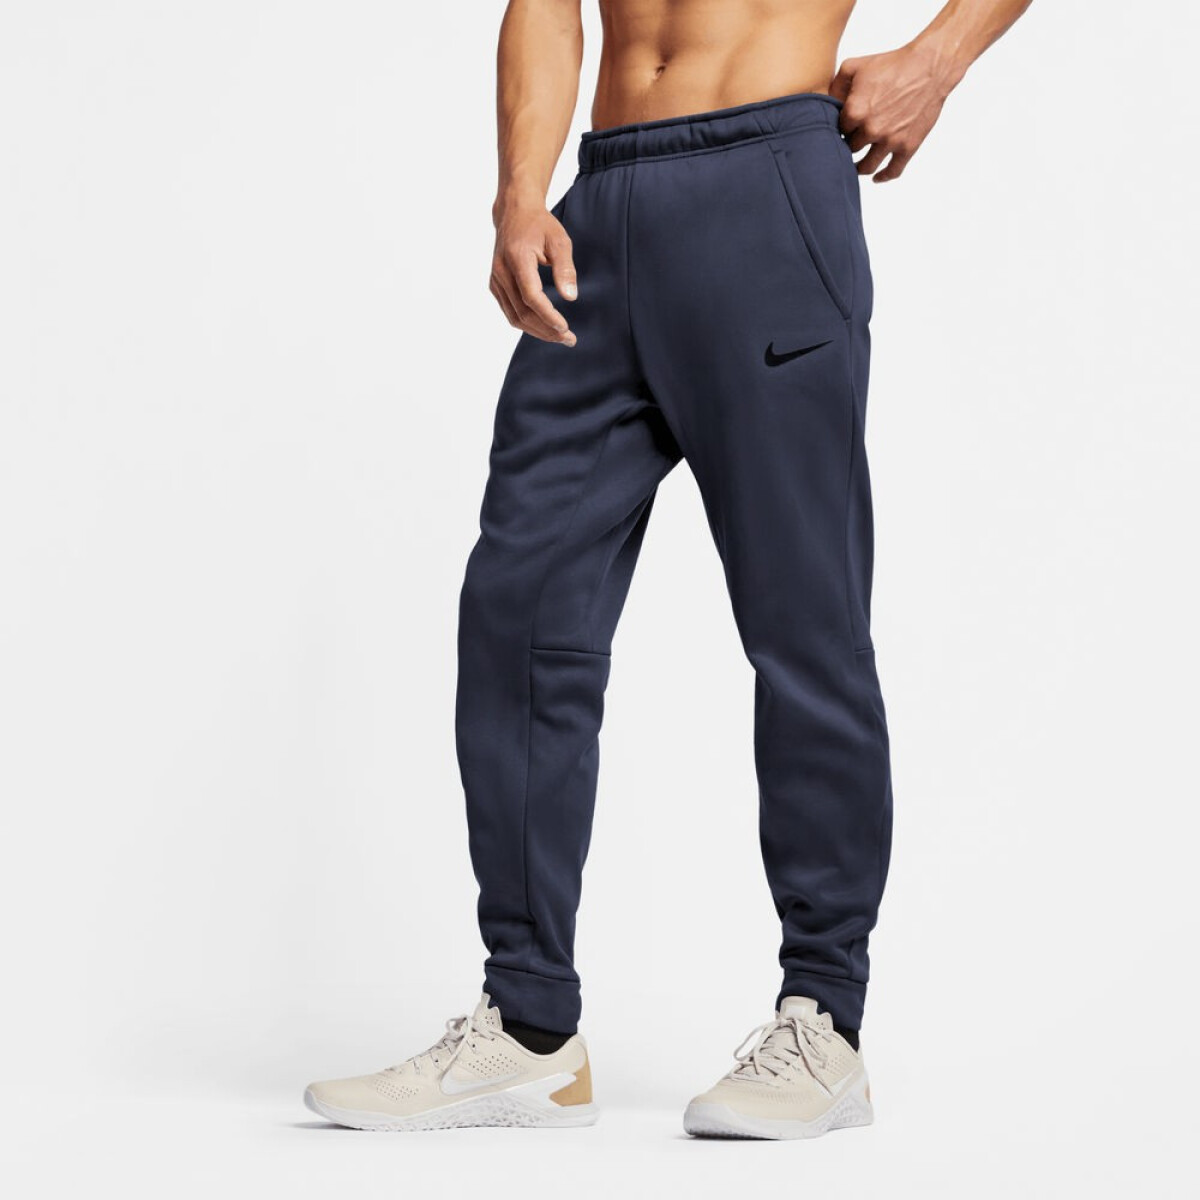 Pantalon Nike Training Hombre Taper - Color Único 